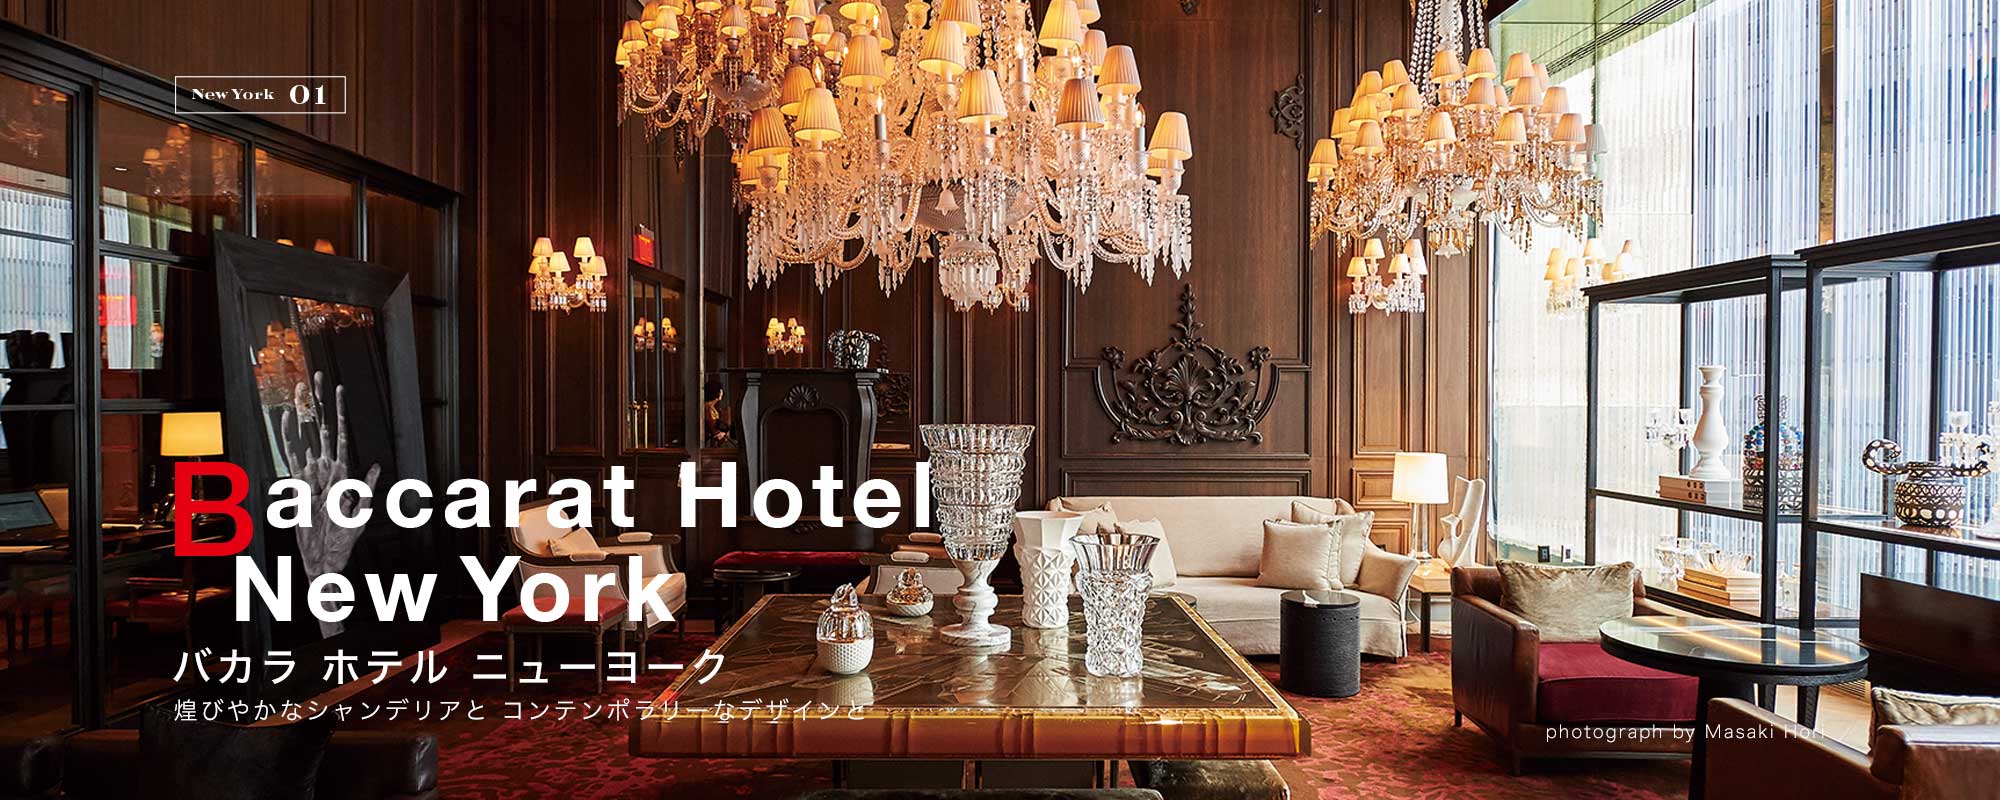 Baccarat Hotel New York - バカラ ホテル ニューヨーク  / 煌びやかなシャンデリアとコンテンポラリーなデザインと